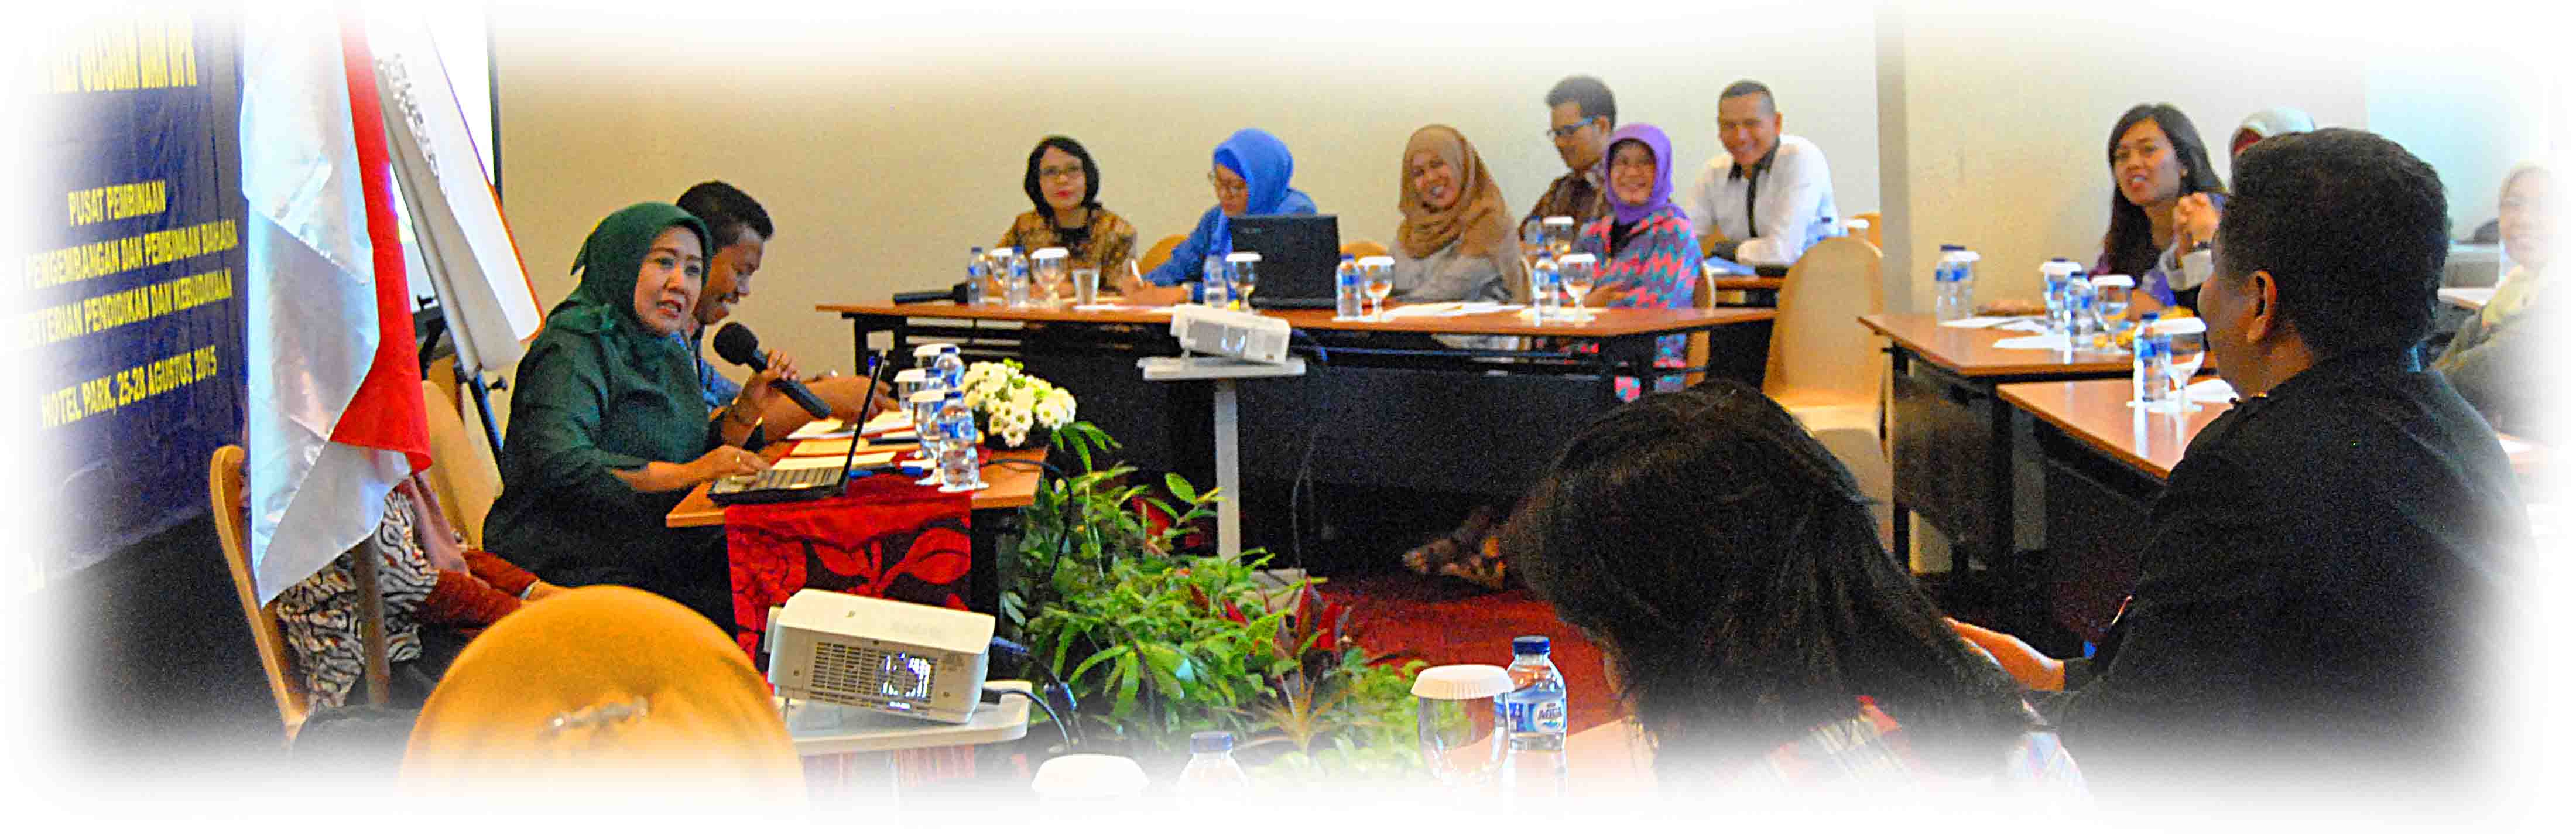 Badan Bahasa Menyelenggarakan Forum Diskusi Tenaga Ahli Bahasa di Kepolisian dan DPR